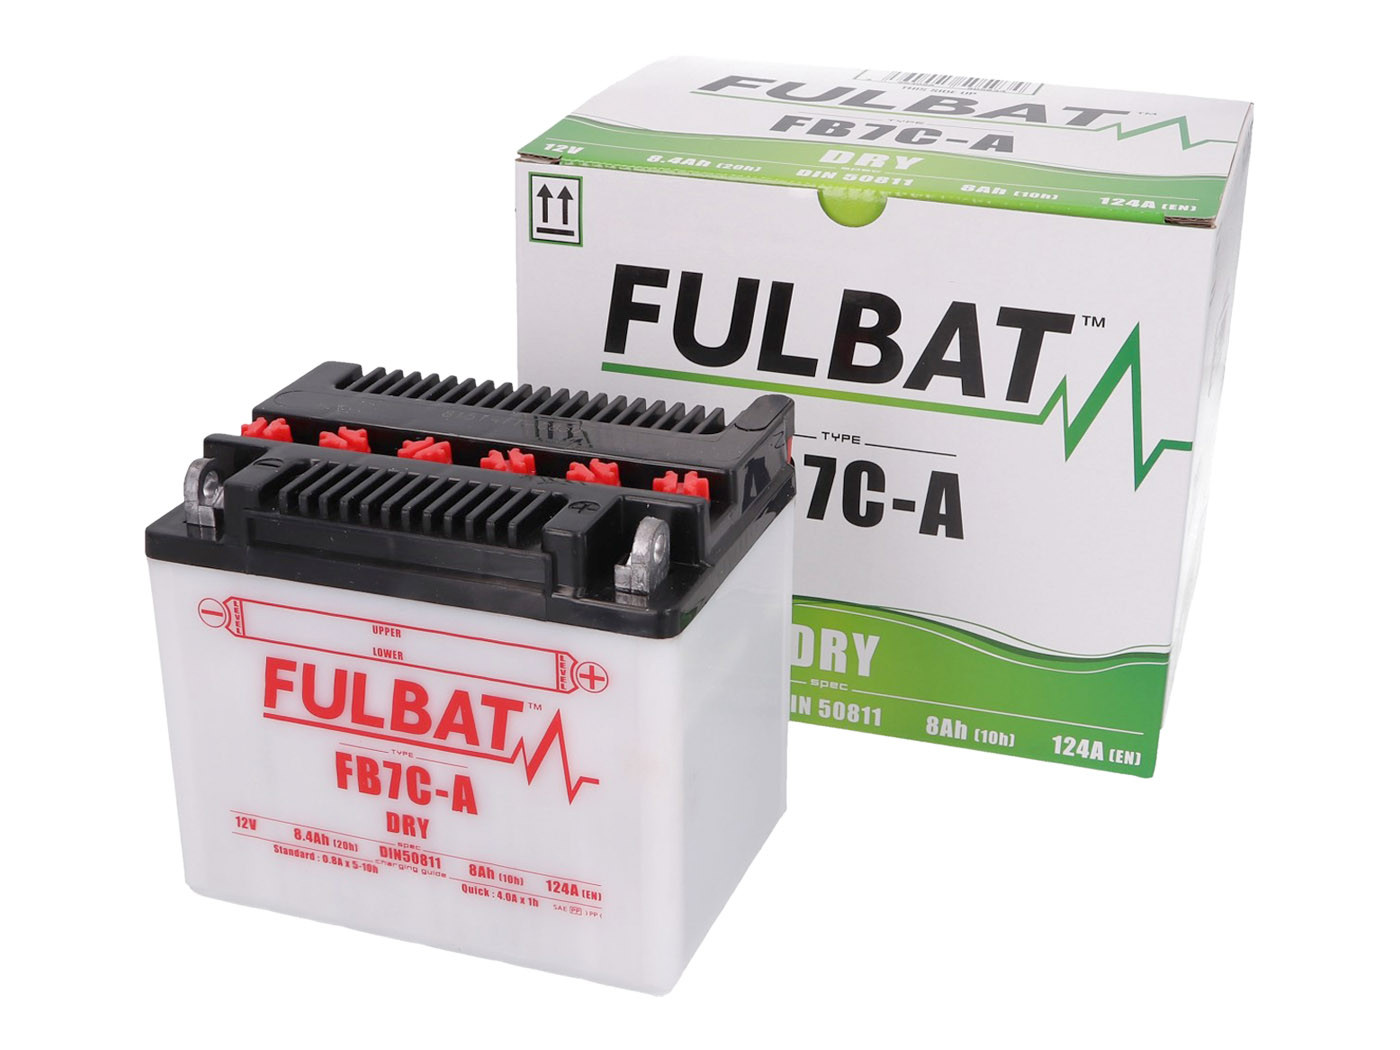 Fulbat FB7C-A DRY száraz akkumulátor + savcsomag